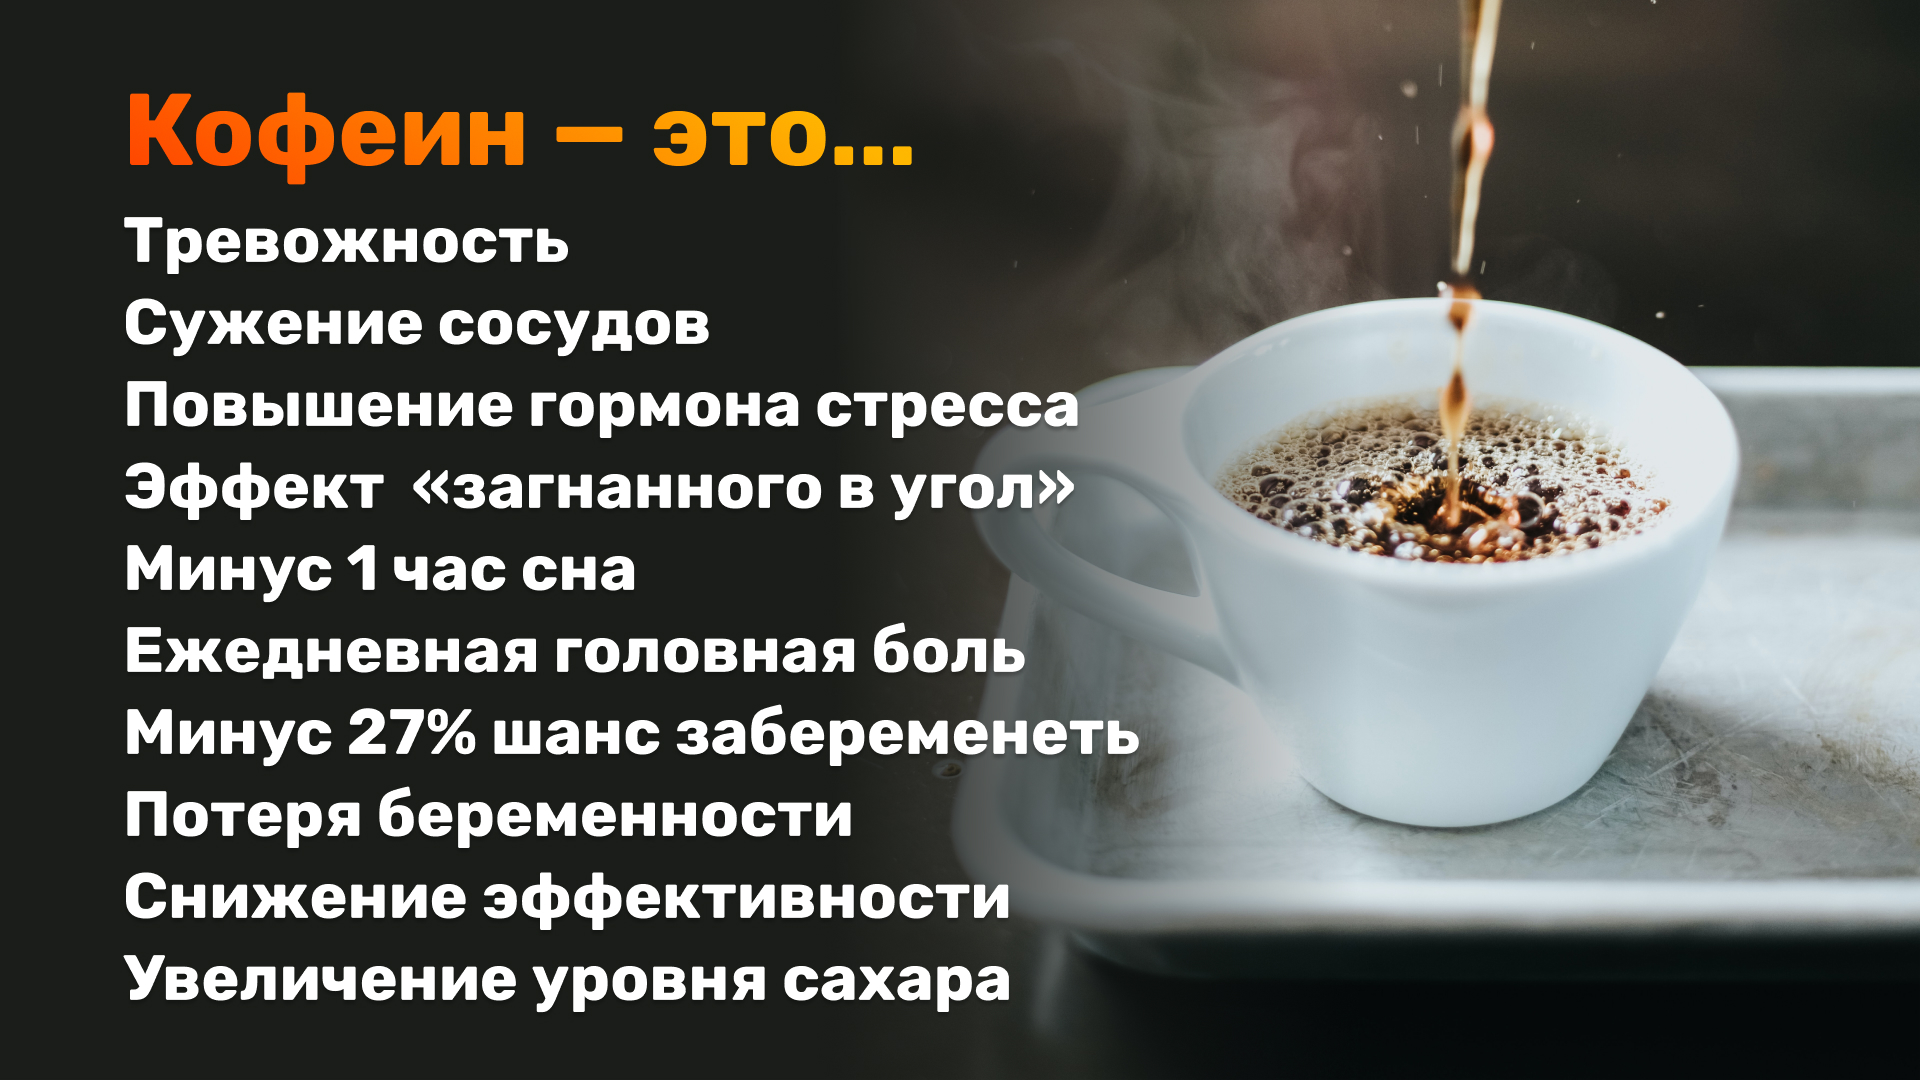 Возьми кофеина. Вредные привычки кофеин. Буклет о вреде кофеина. Вред кофеина. Обнаружение кофеина в чае.